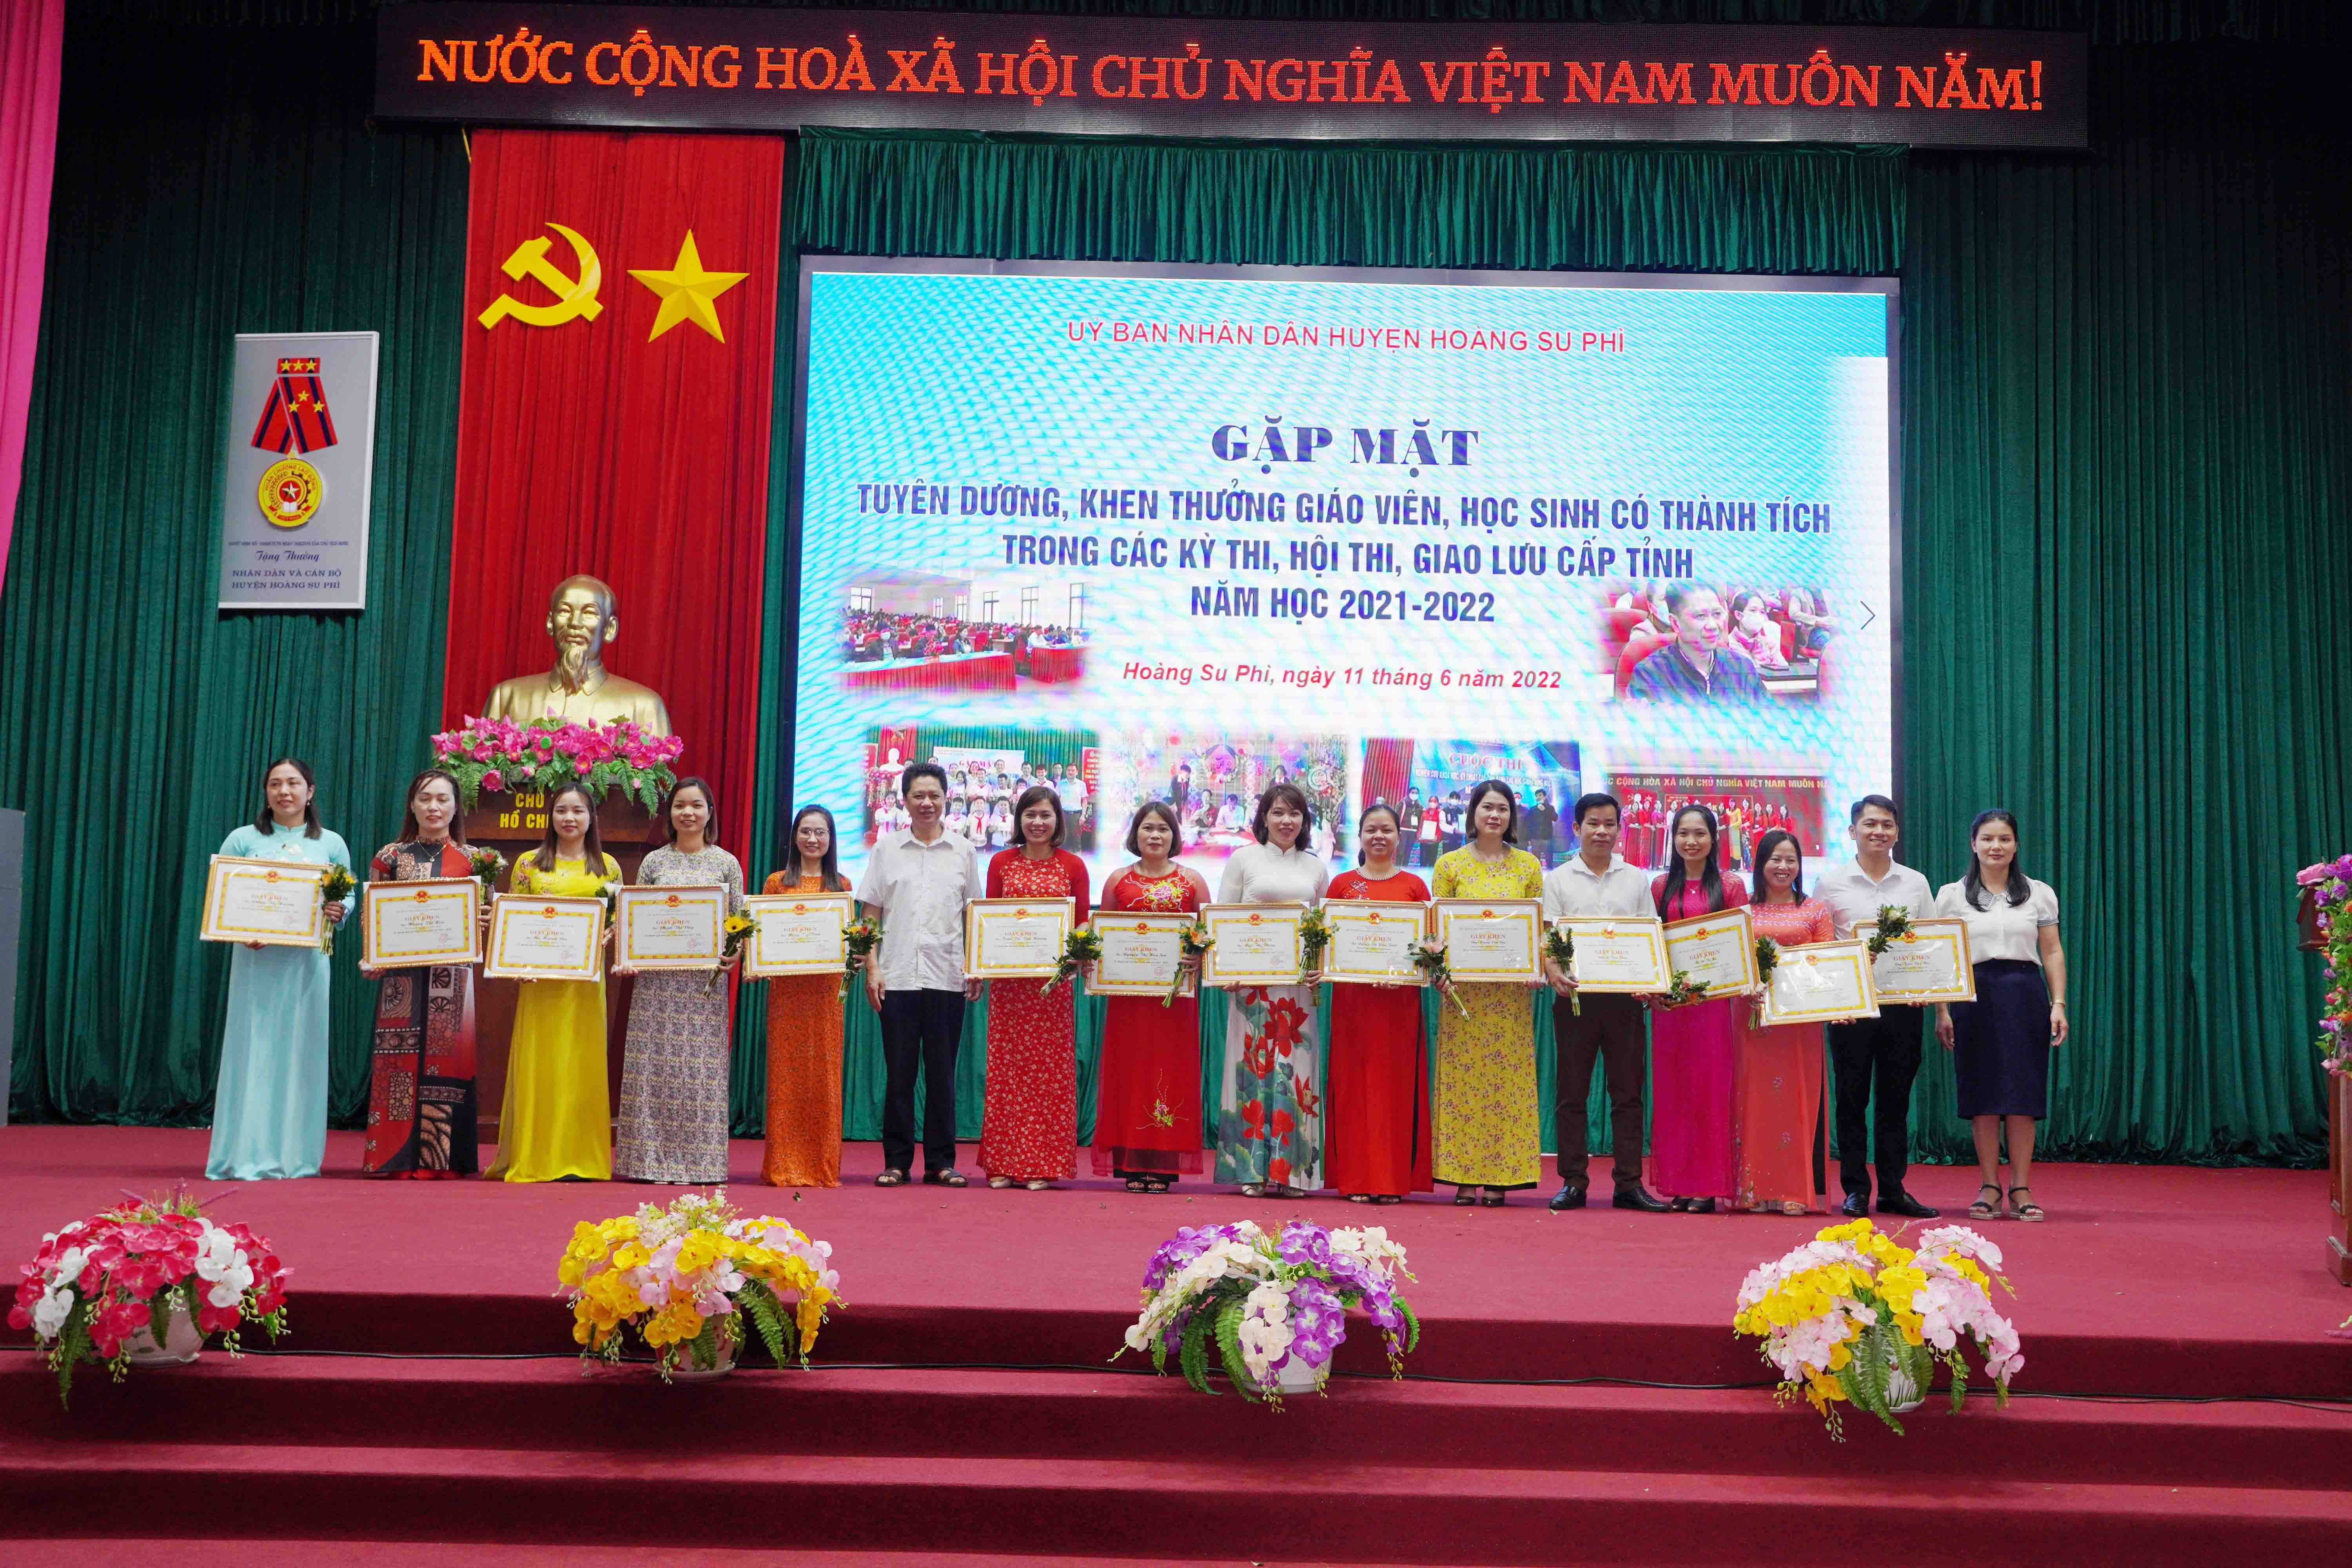 Huyện Hoàng Su Phì gặp mặt khen thưởng giáo viên, học sinh năm học 2021 -2022